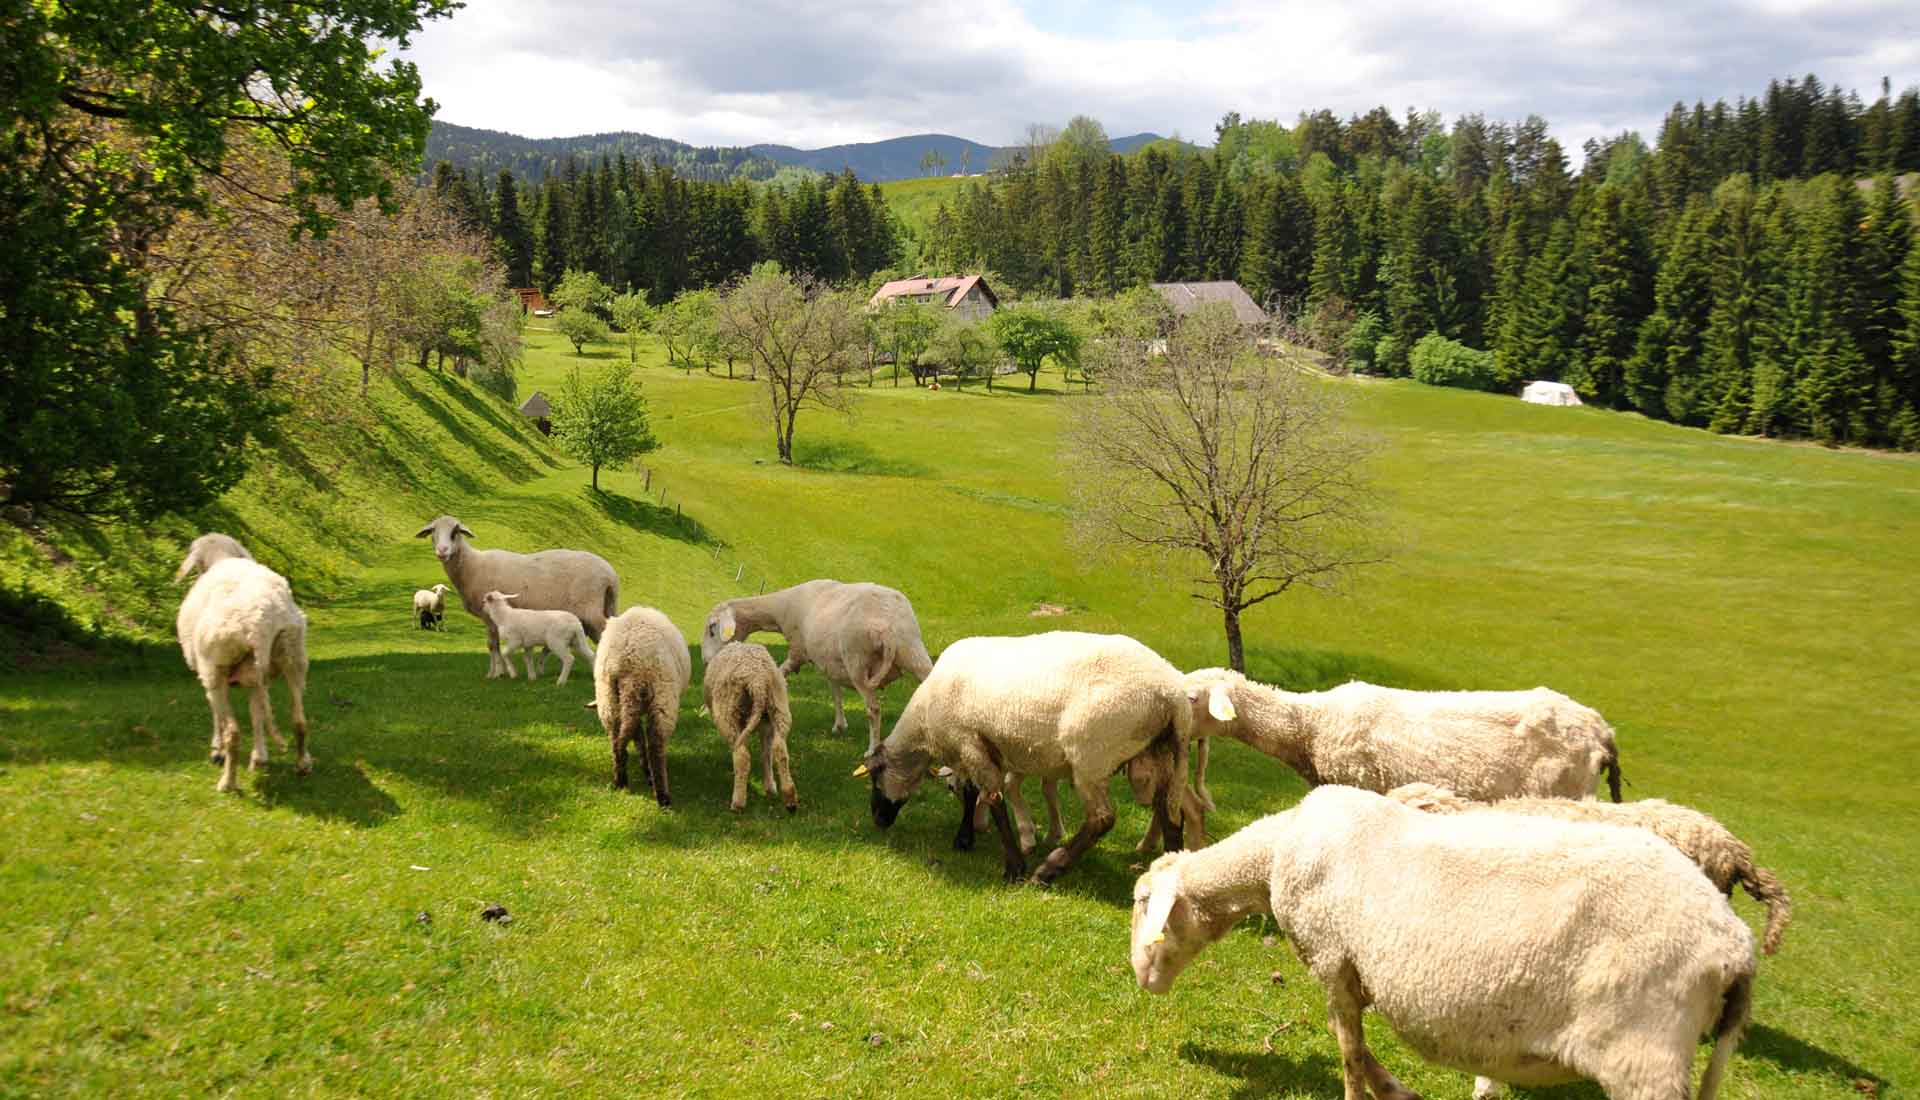 allevamento di pecore in slovenia nella regione della koroska